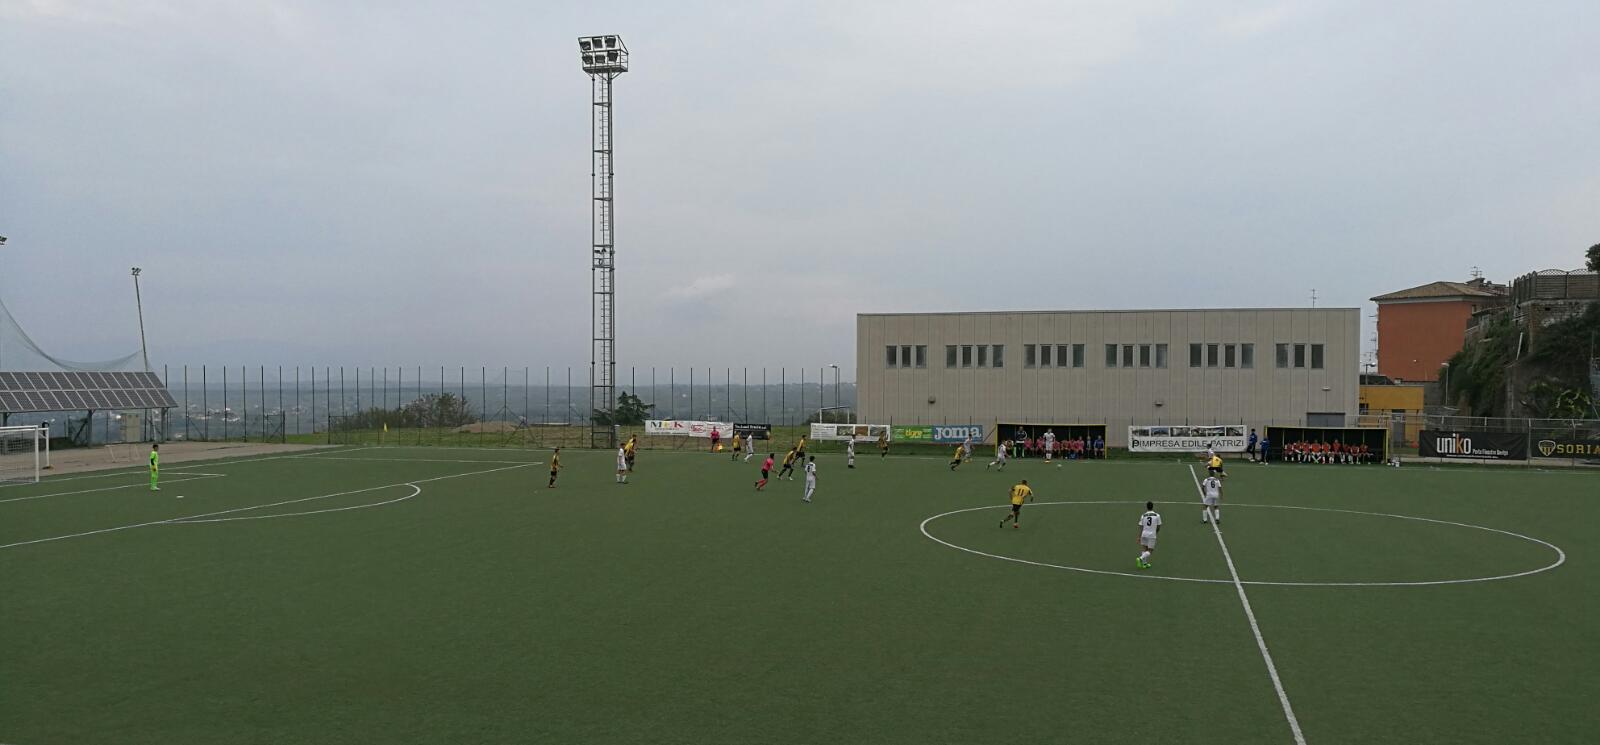 Under 17 Serie C: Viterbese – Fermana 2-0, gialloblù in testa al girone